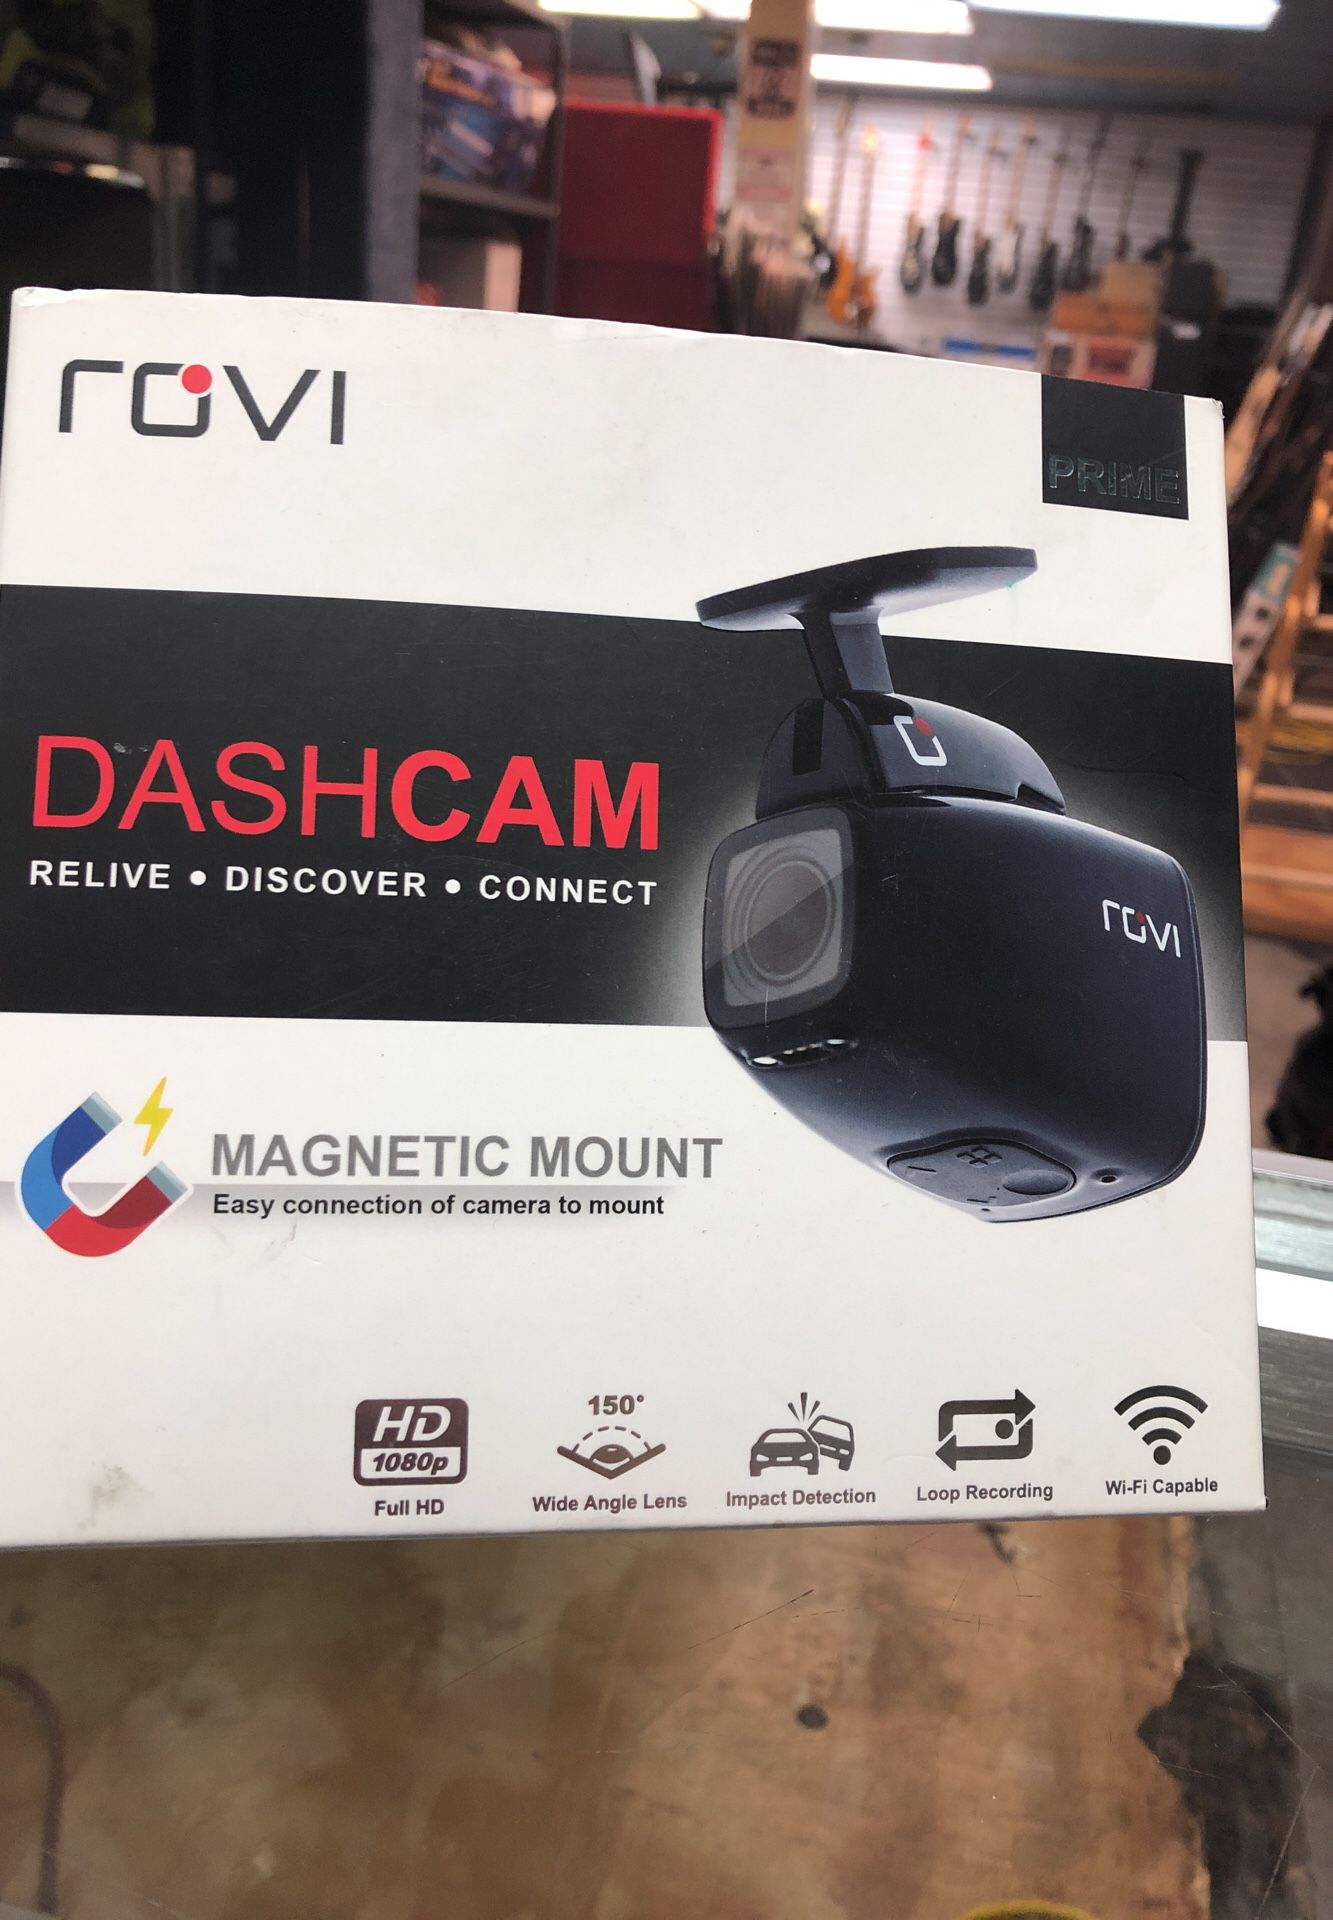 Rovi dashcam CL-6000 prime brand new